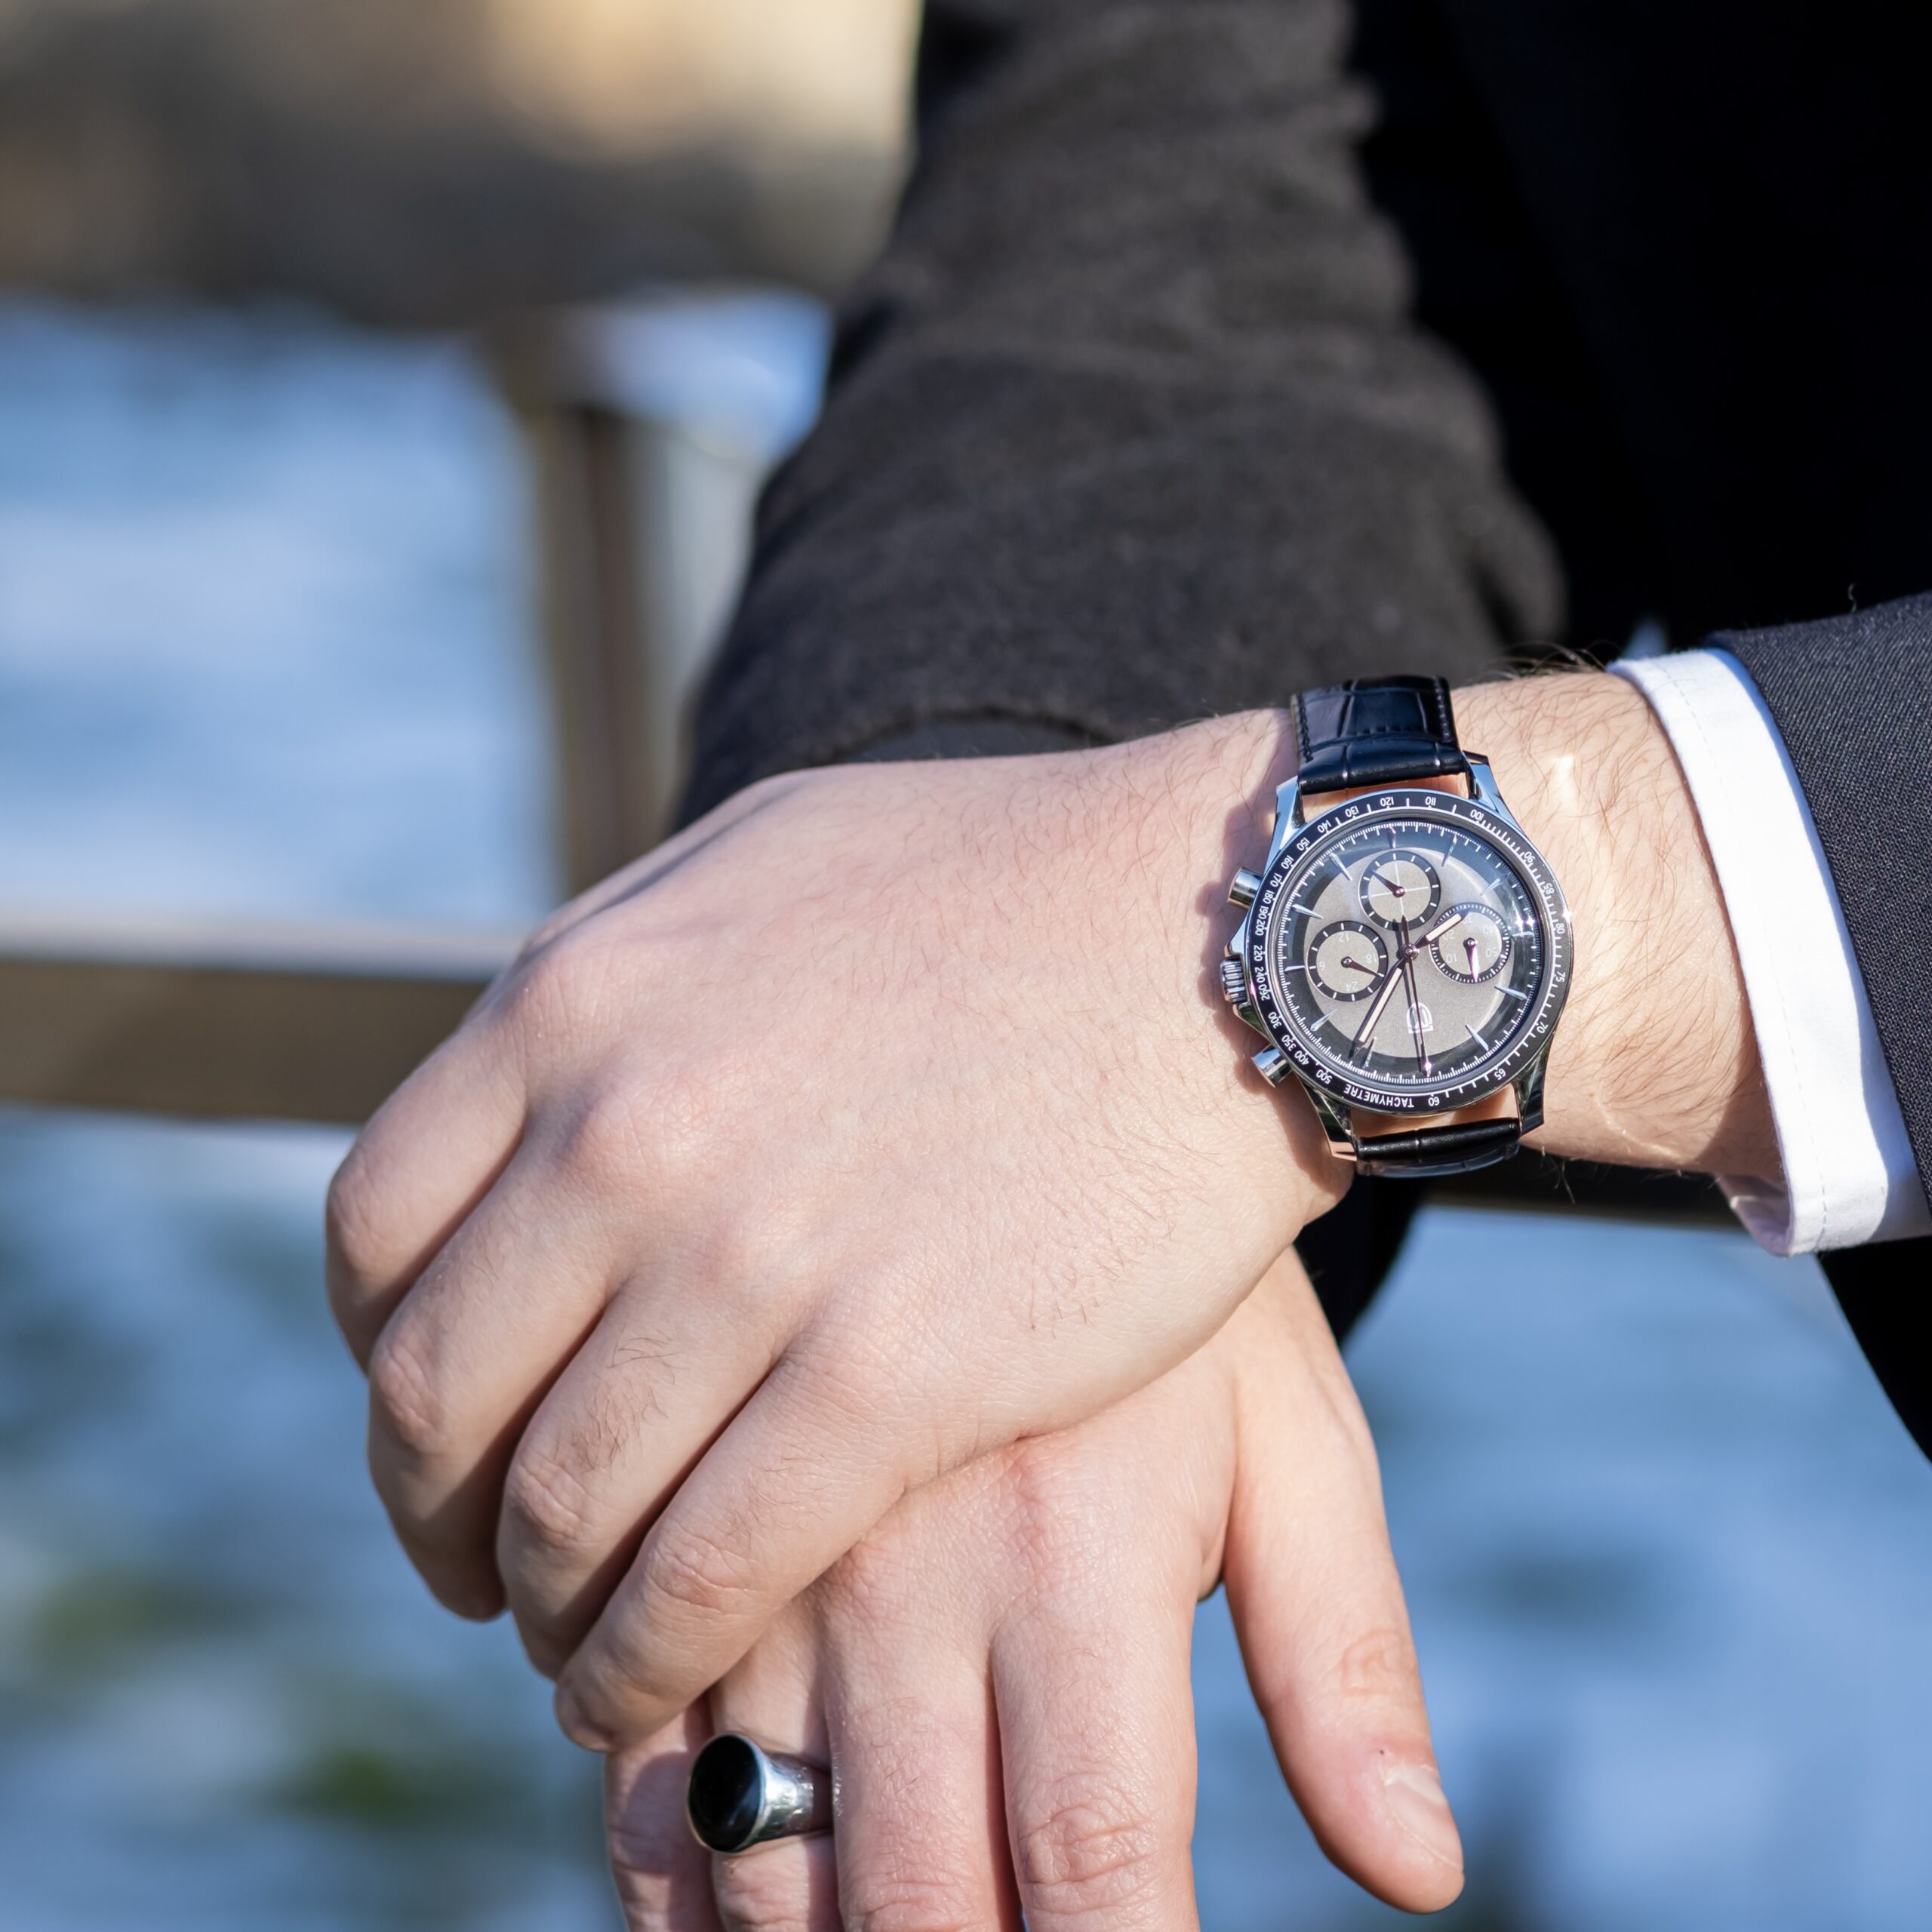 MT&W Watch представляет шесть хронографов в винтажном стиле с циферблатами из патины